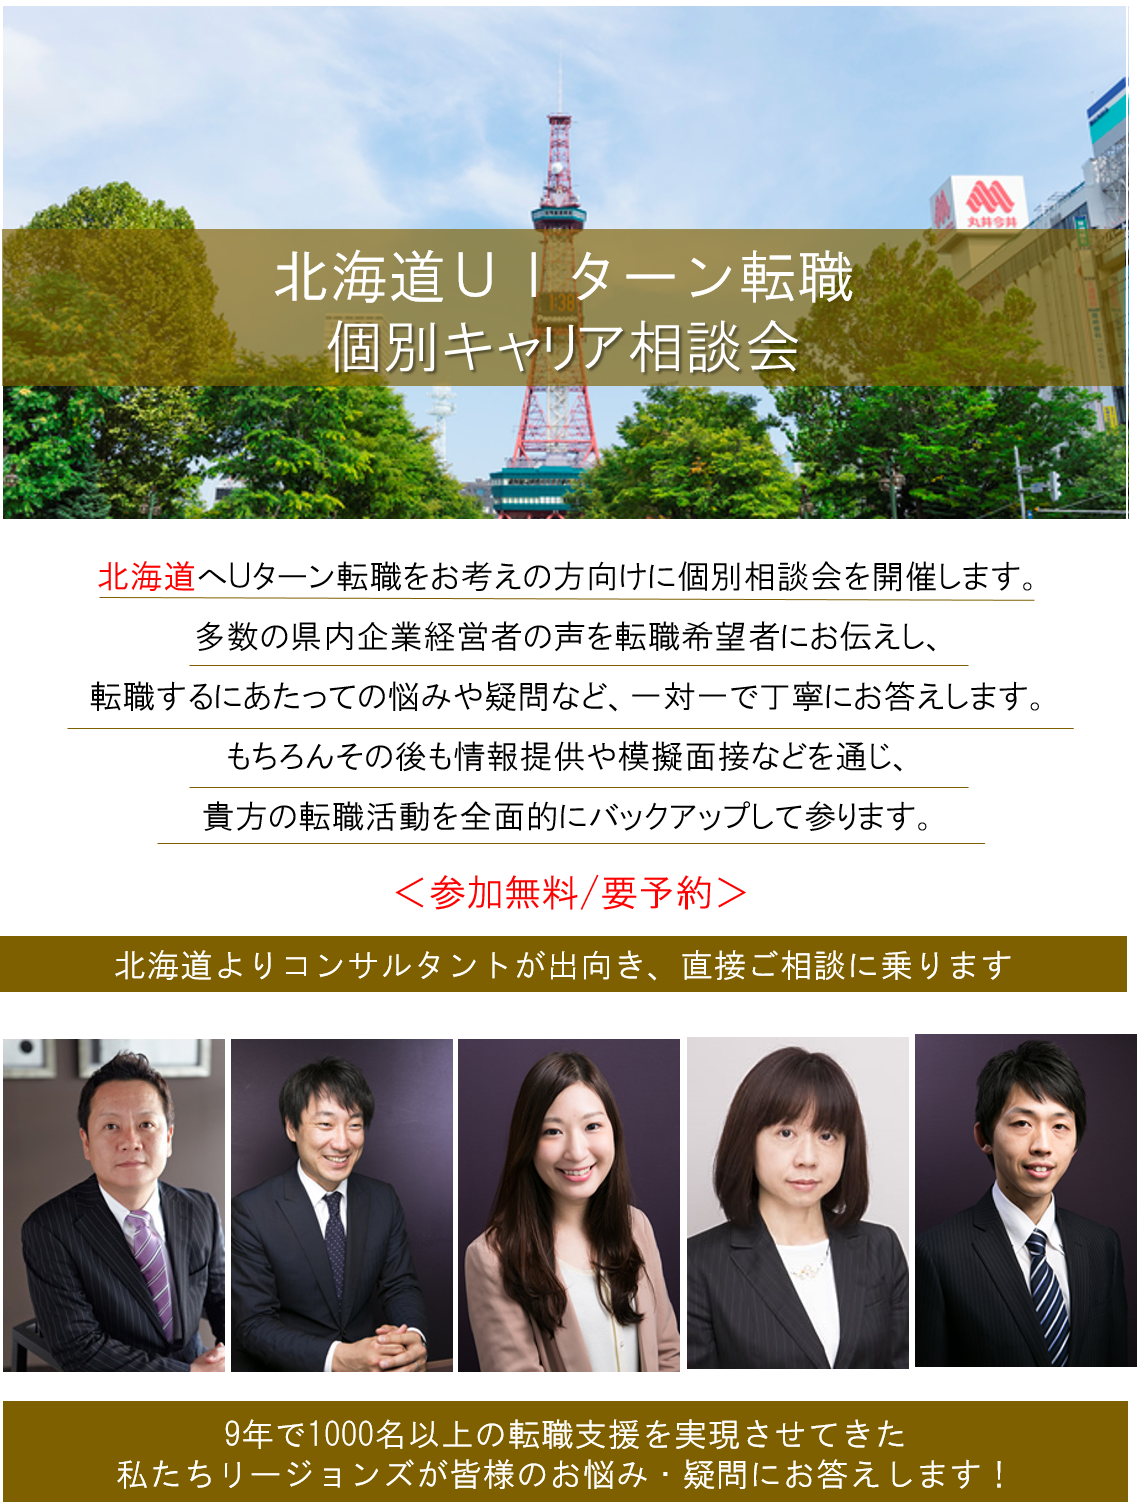 http://www.regional.co.jp/career_mt/1006tokyo.png